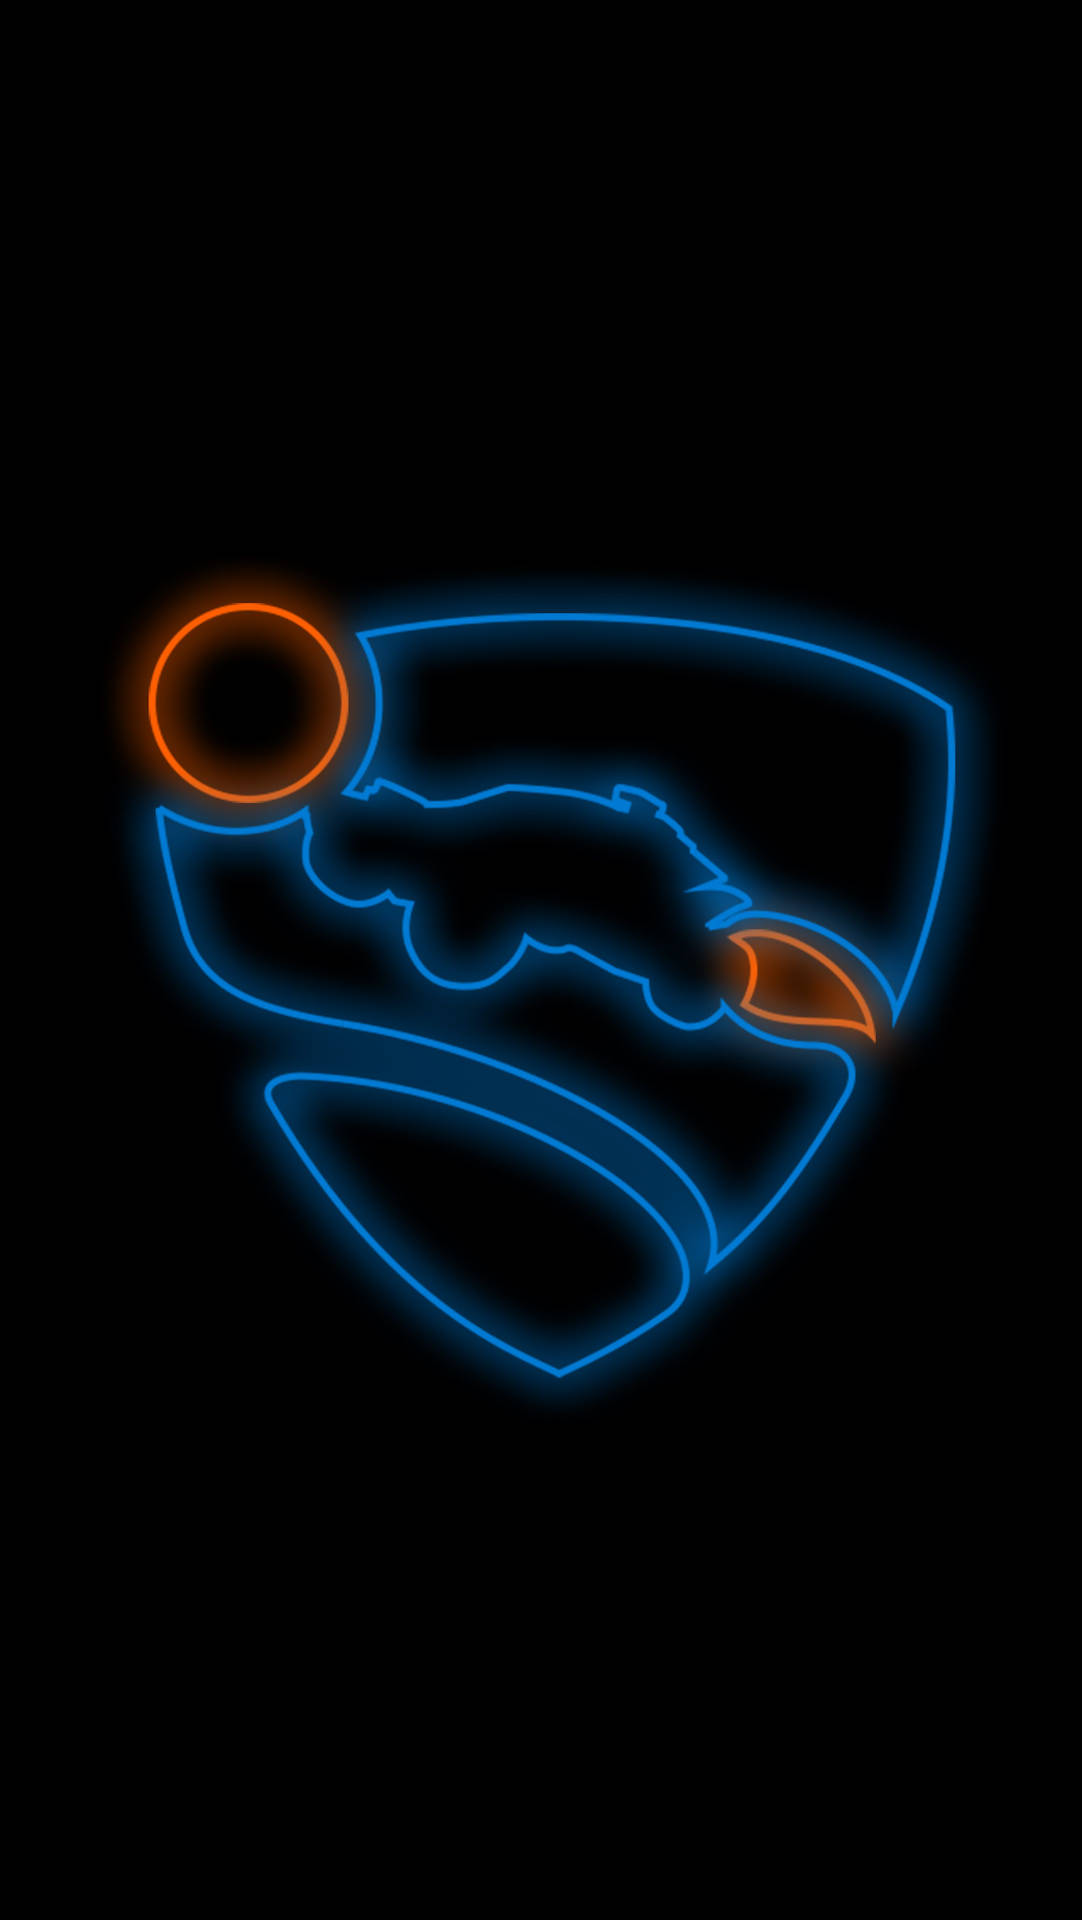 Papelde Parede Do Rocket League Com Logotipo Neon Nas Cores Azul E Laranja Para Iphone. Papel de Parede